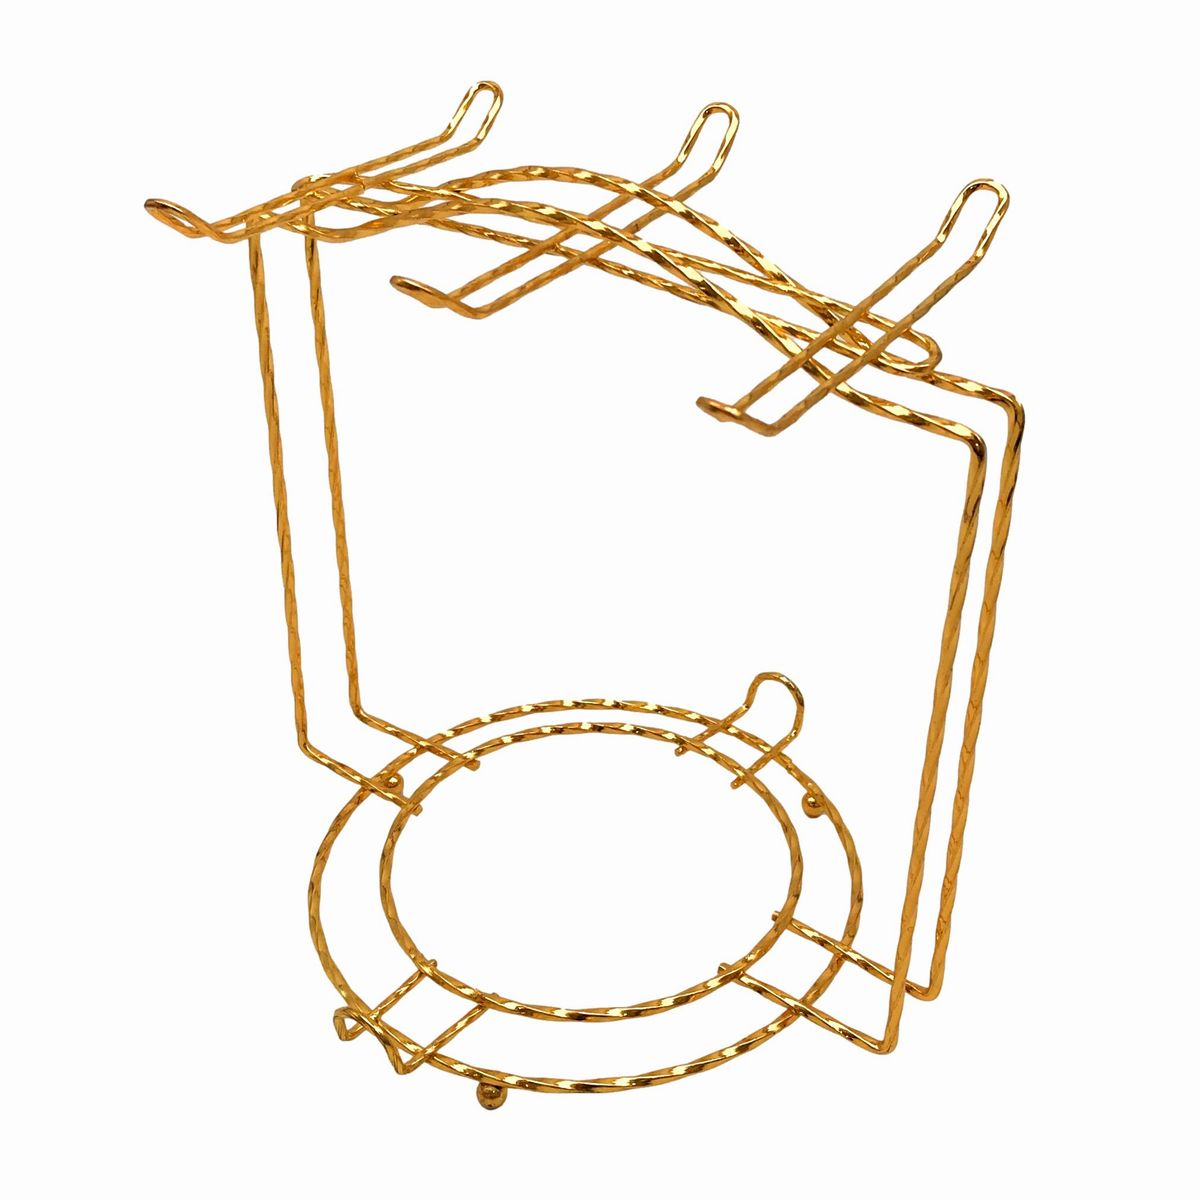 【訳あり】カップスタンド コーヒーカップ ソーサー用 ヨーロピアン風 角型フレーム ゴールドカラー 金属製 6個用